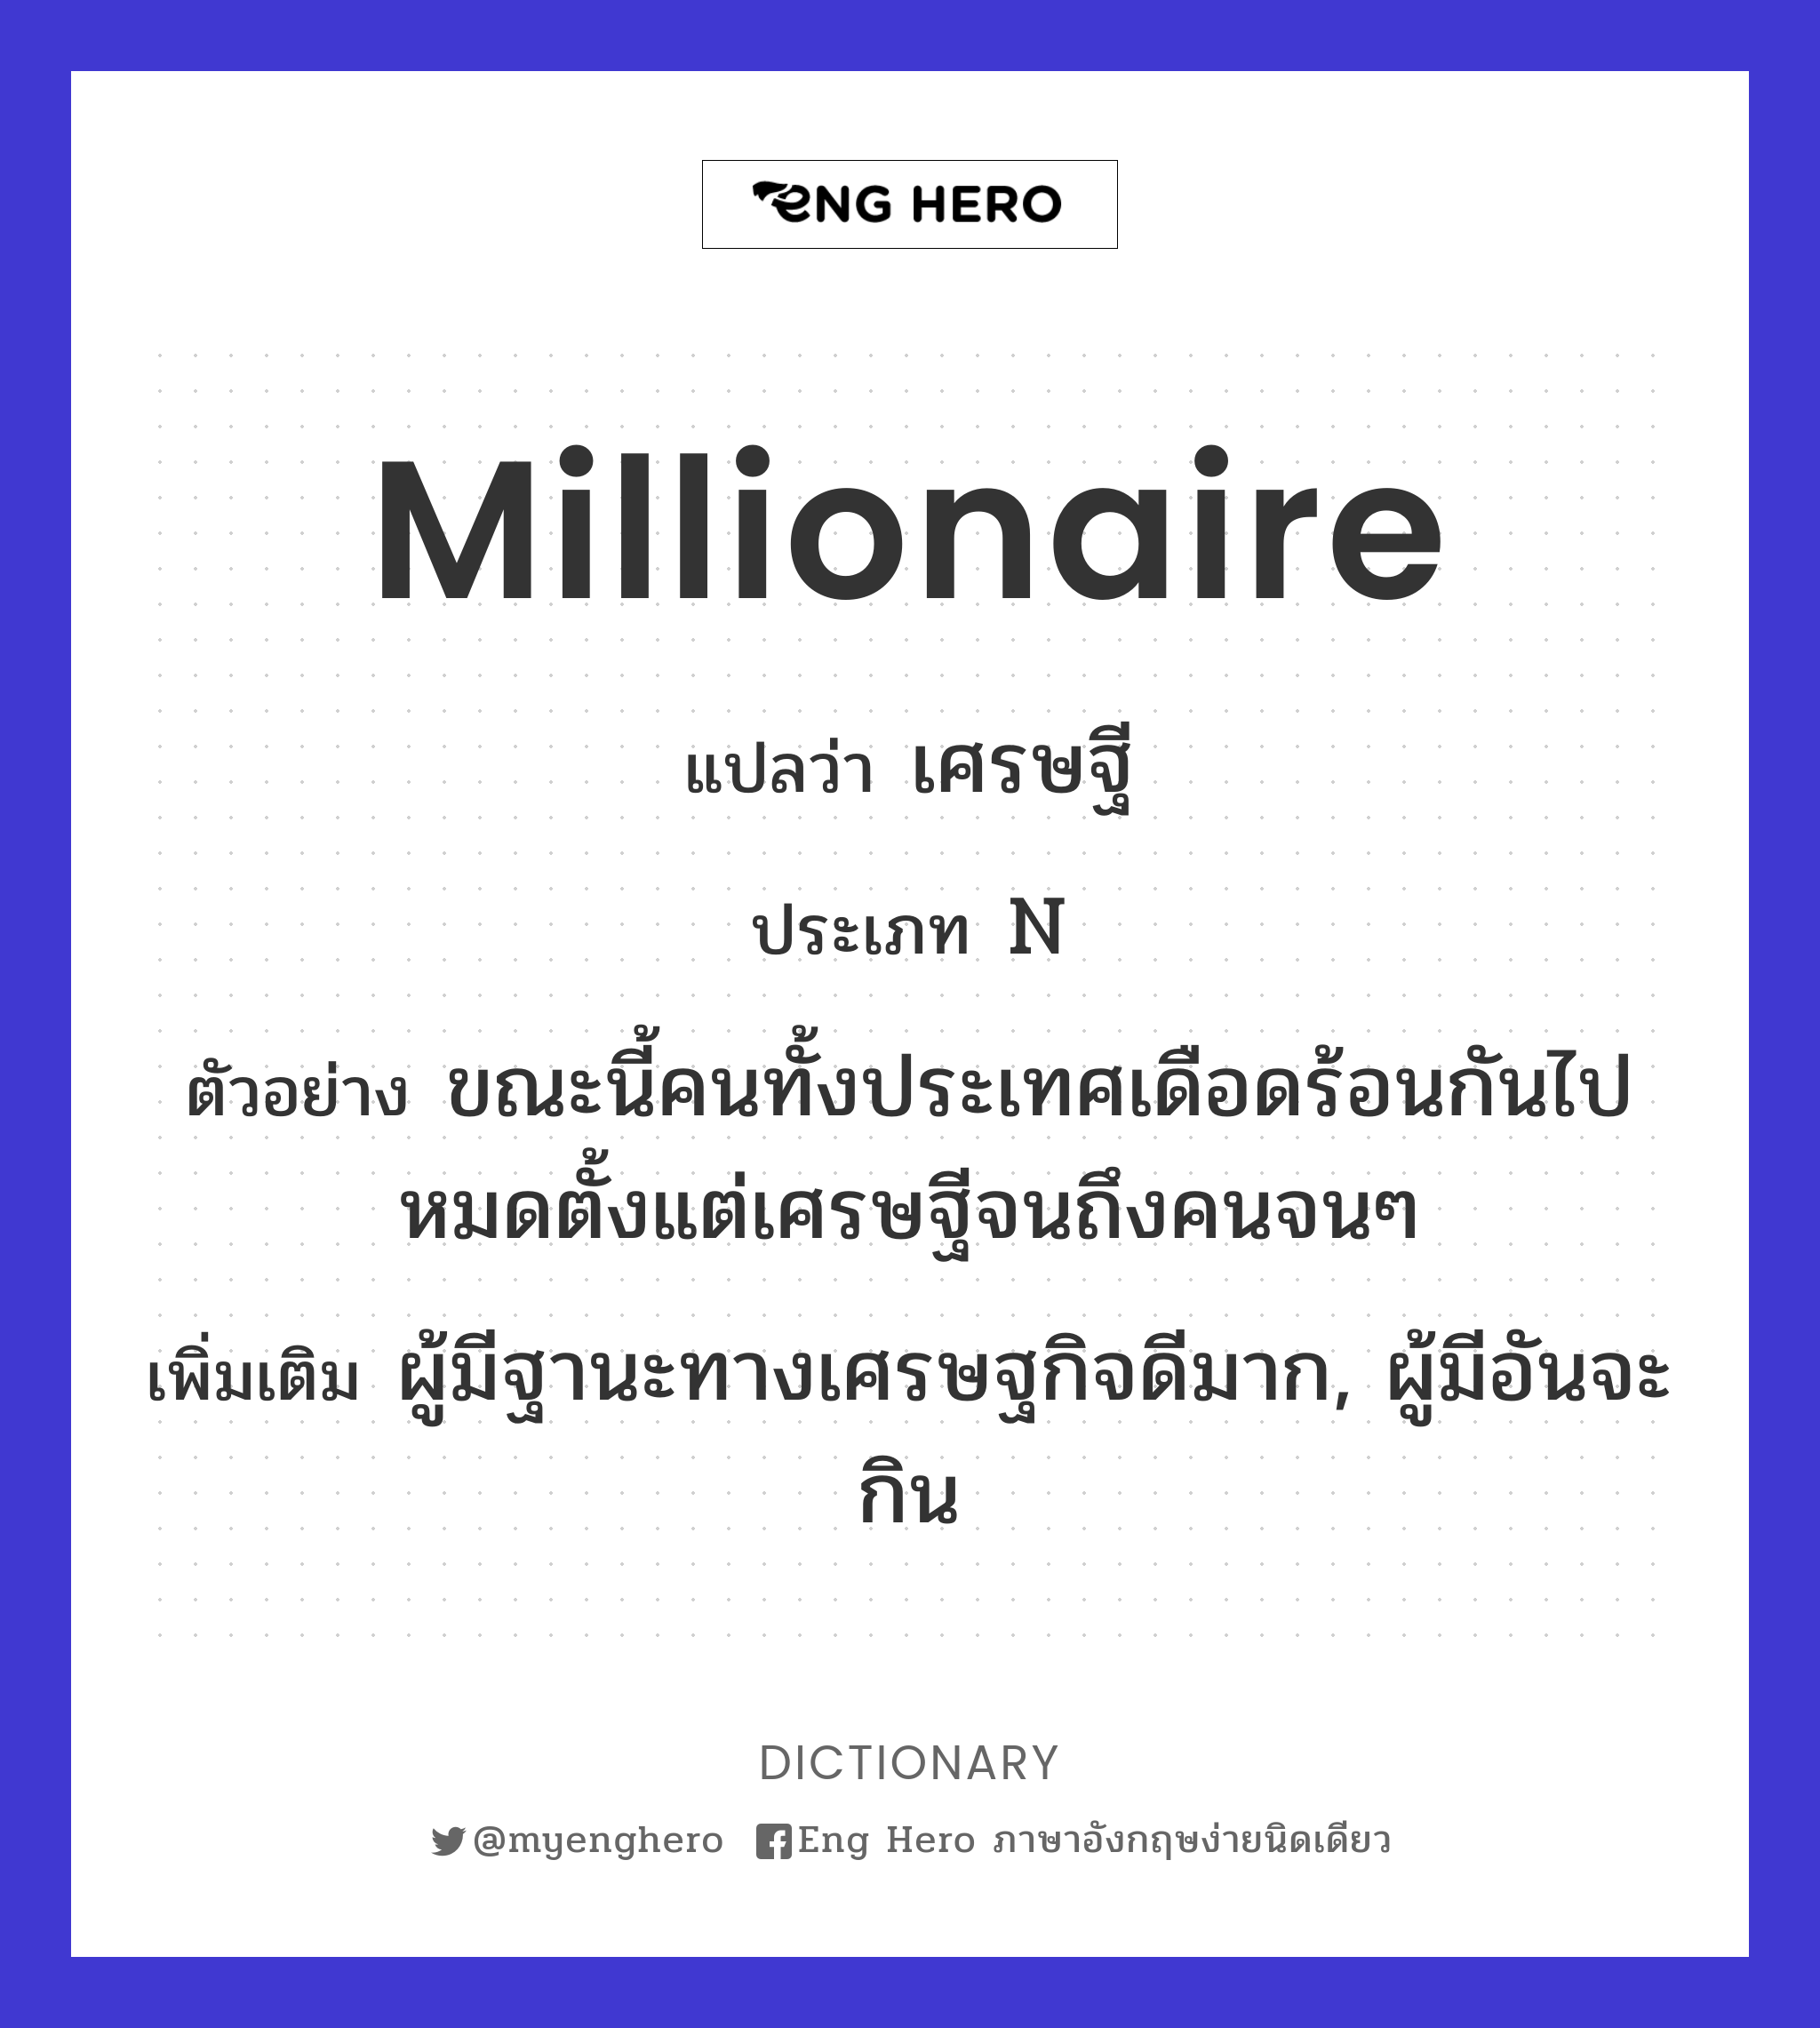 millionaire